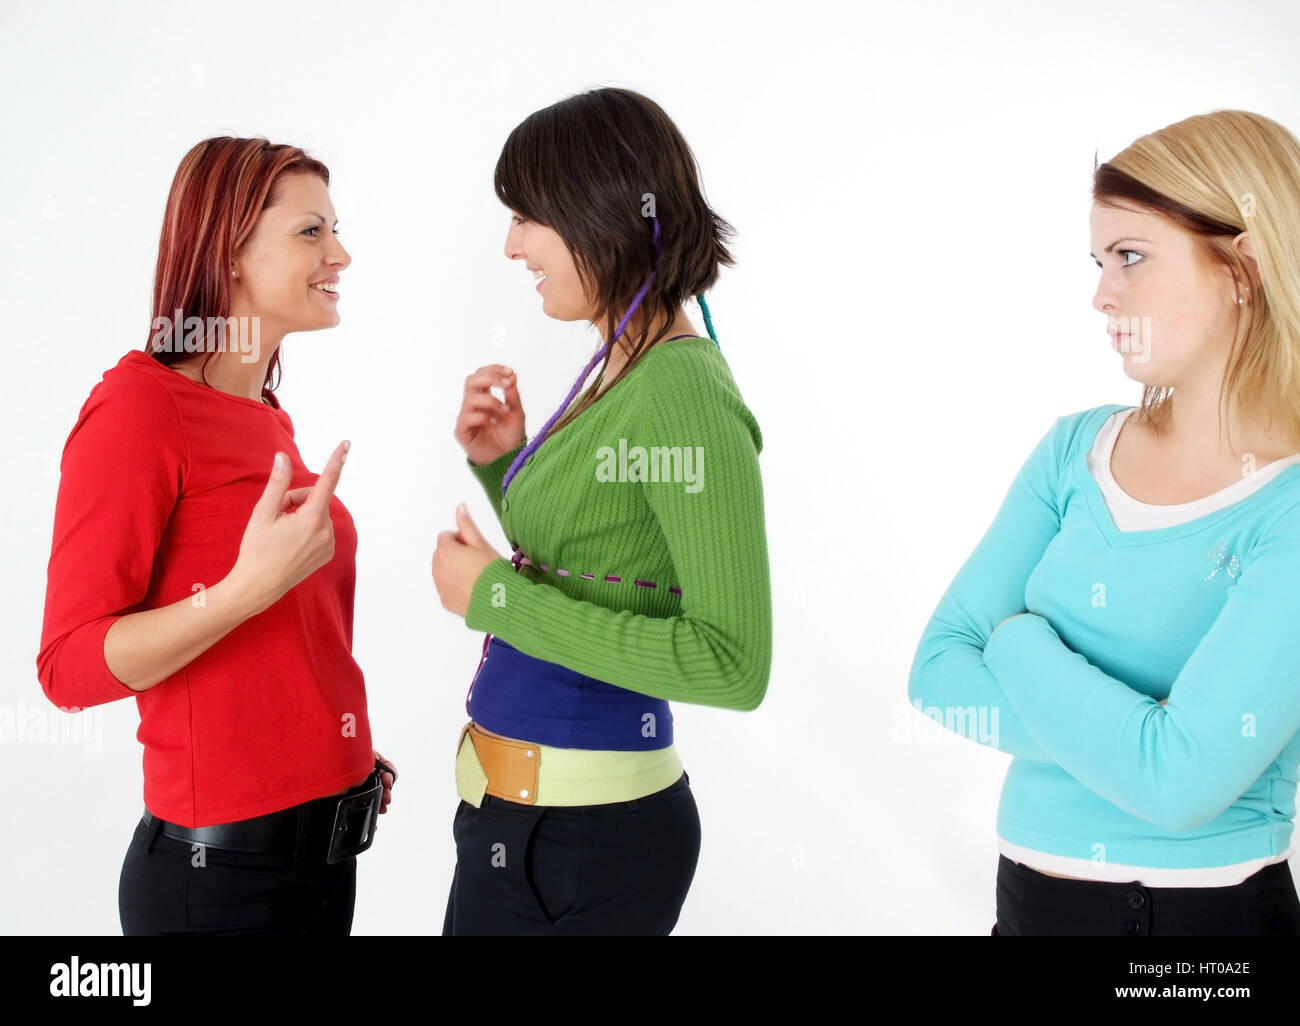 Zwei Frauen tratschen miteinander, eine Frau steht ausgeschlossen daneben - due donne nel parlare, una donna fuorigioco Foto Stock